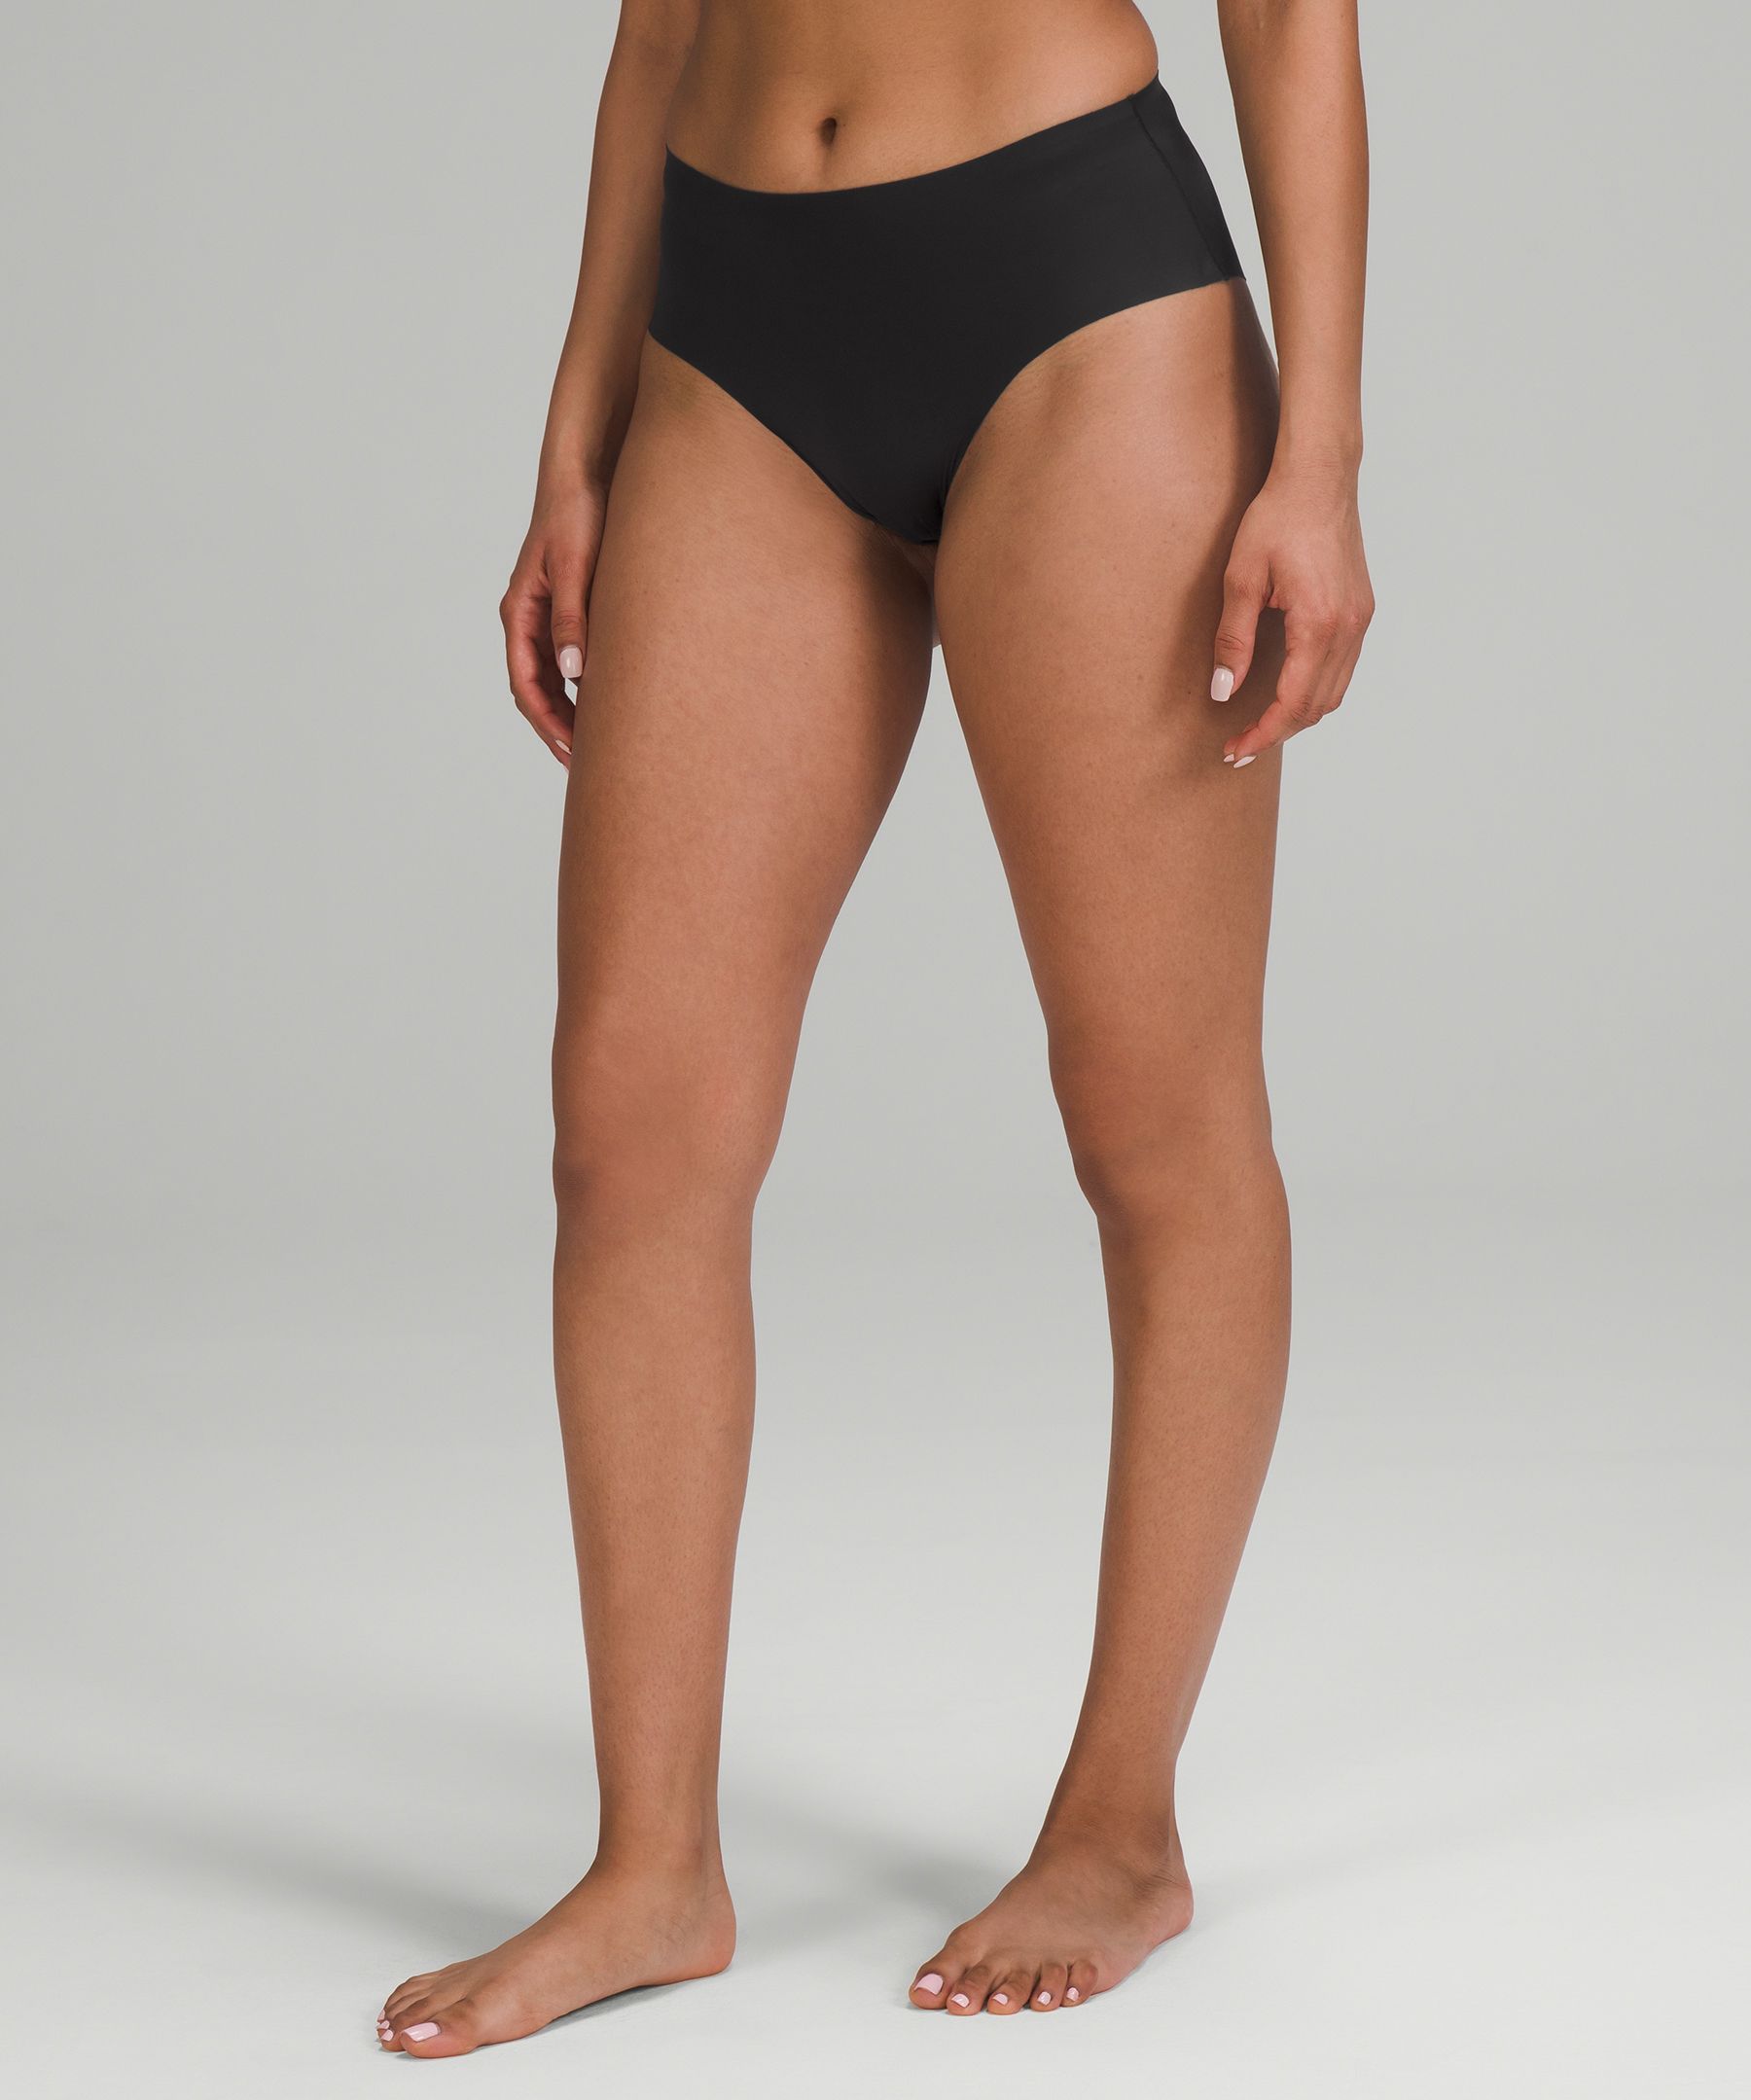 ACTIVE STRETCH ~ Bikini Style Period Underwear - Knicked Australia